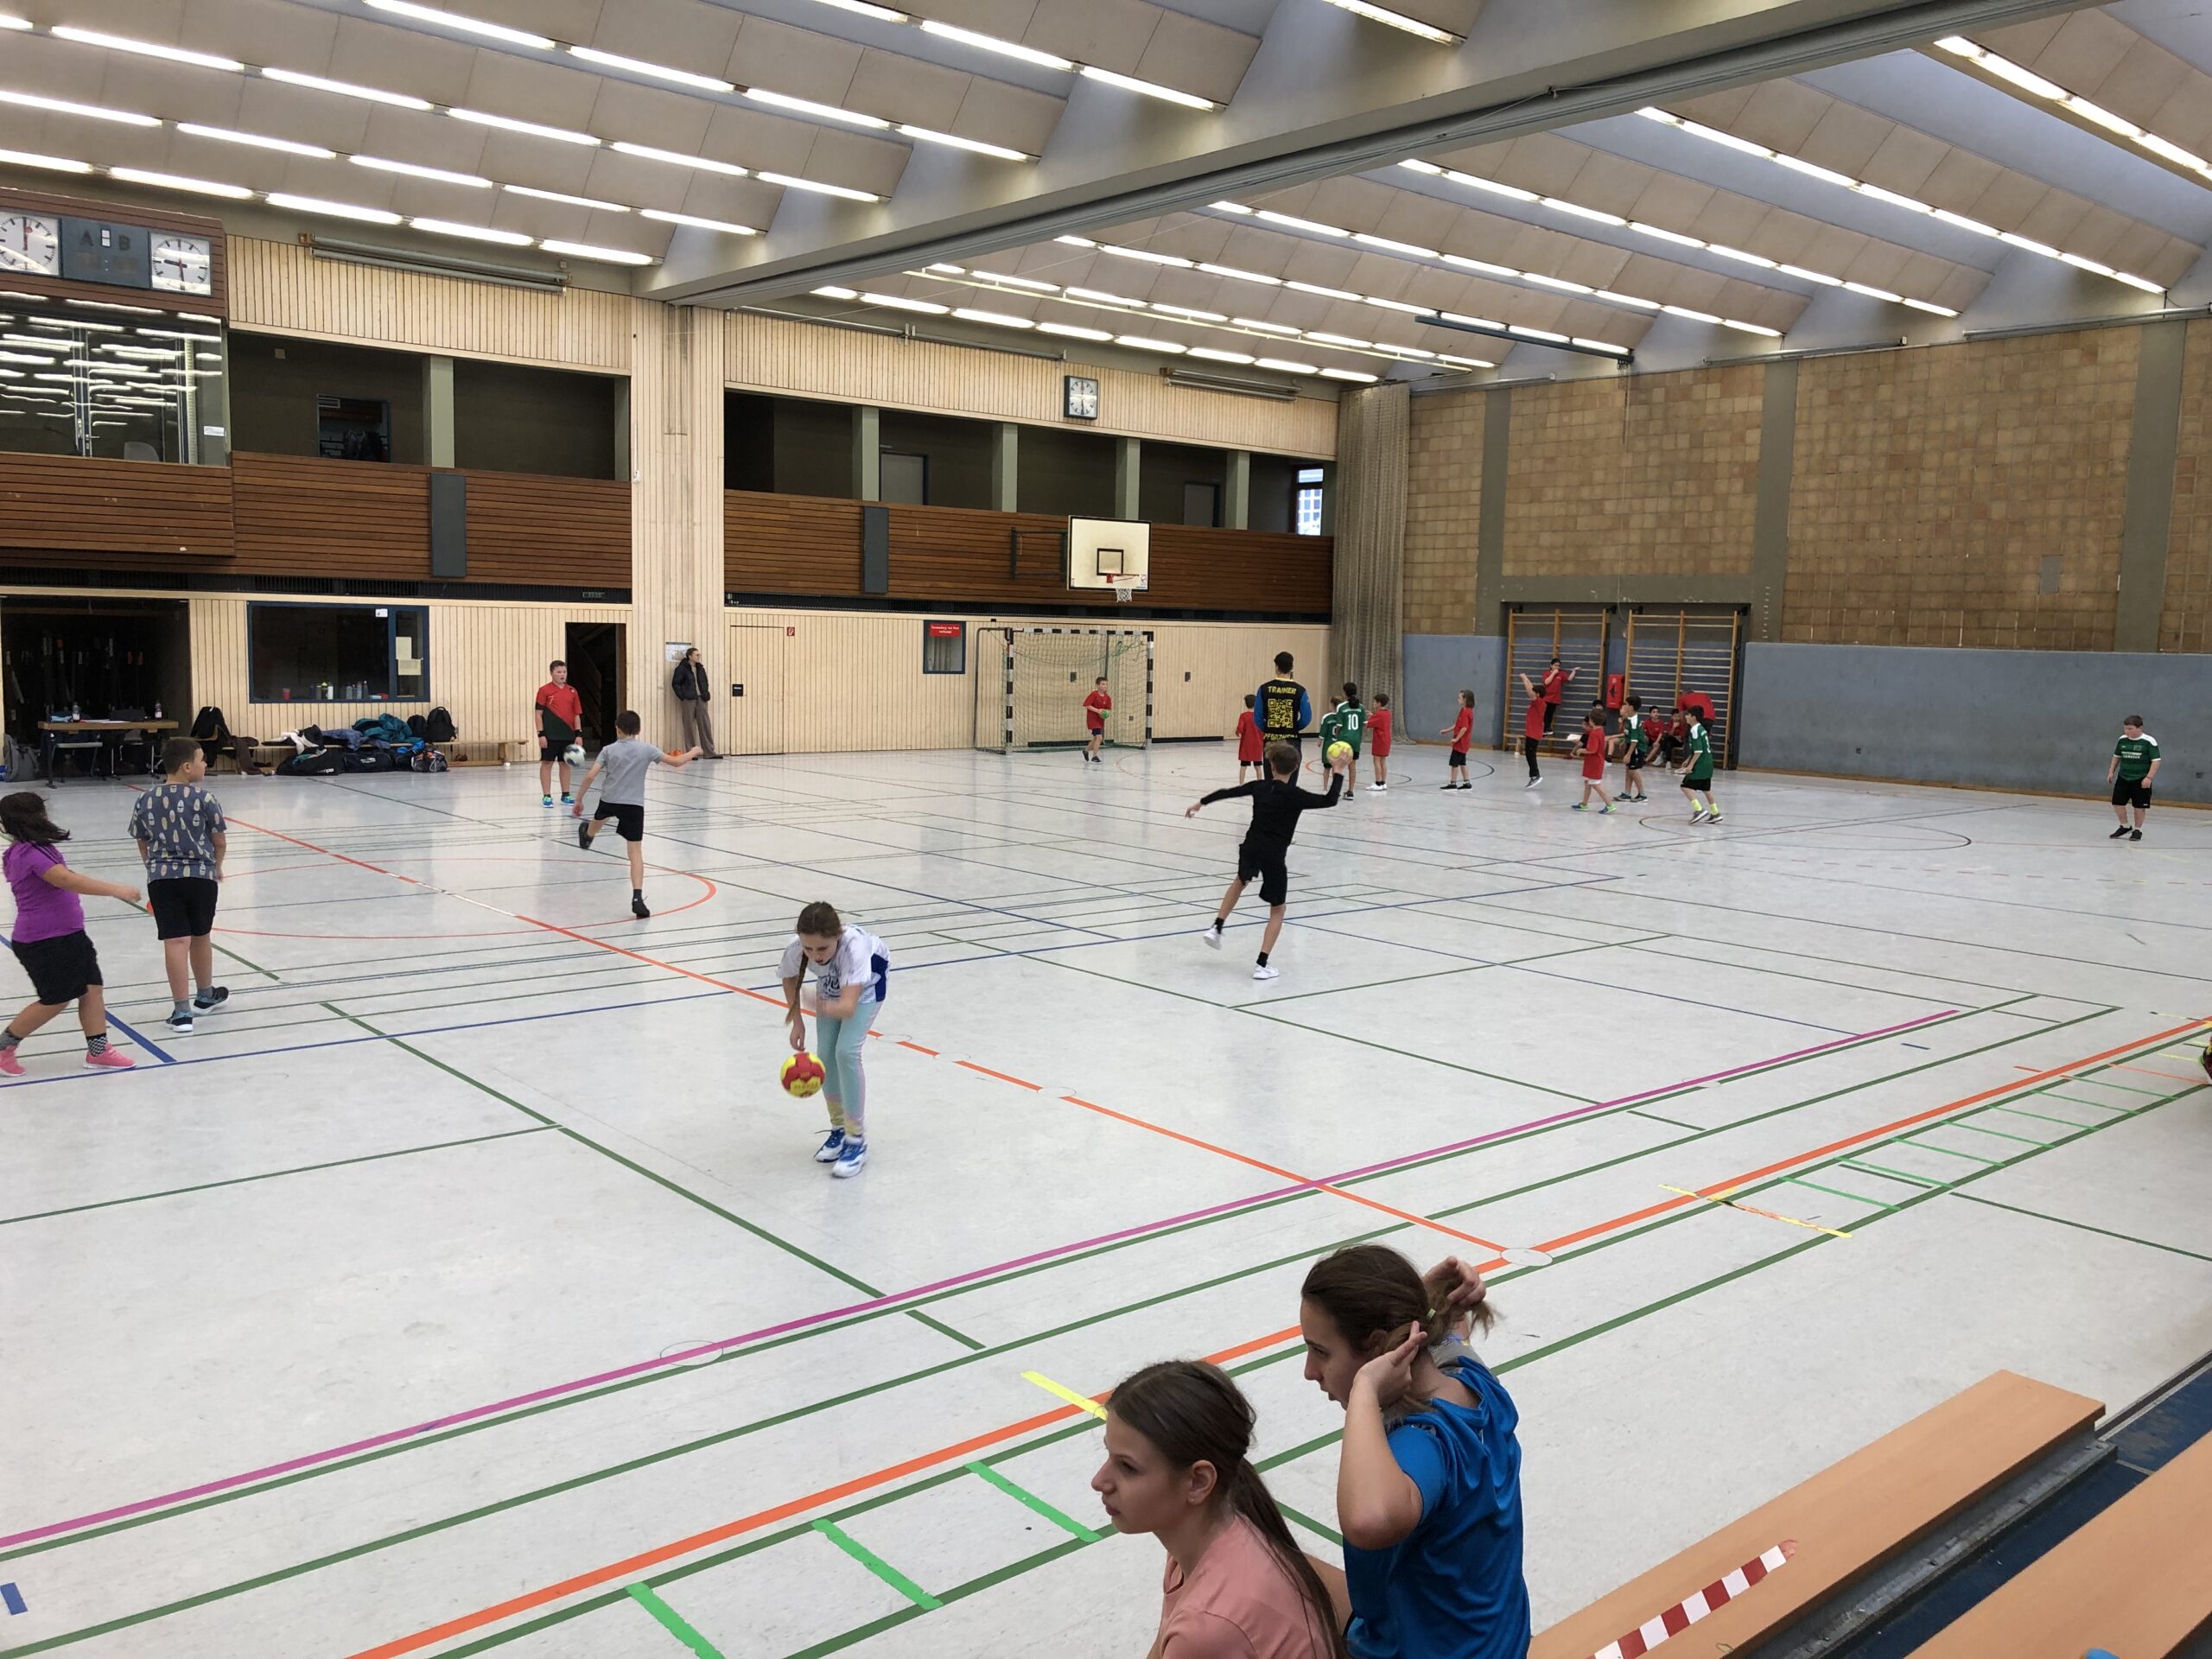 Schüler beim Handballspiel in einer Sporthalle